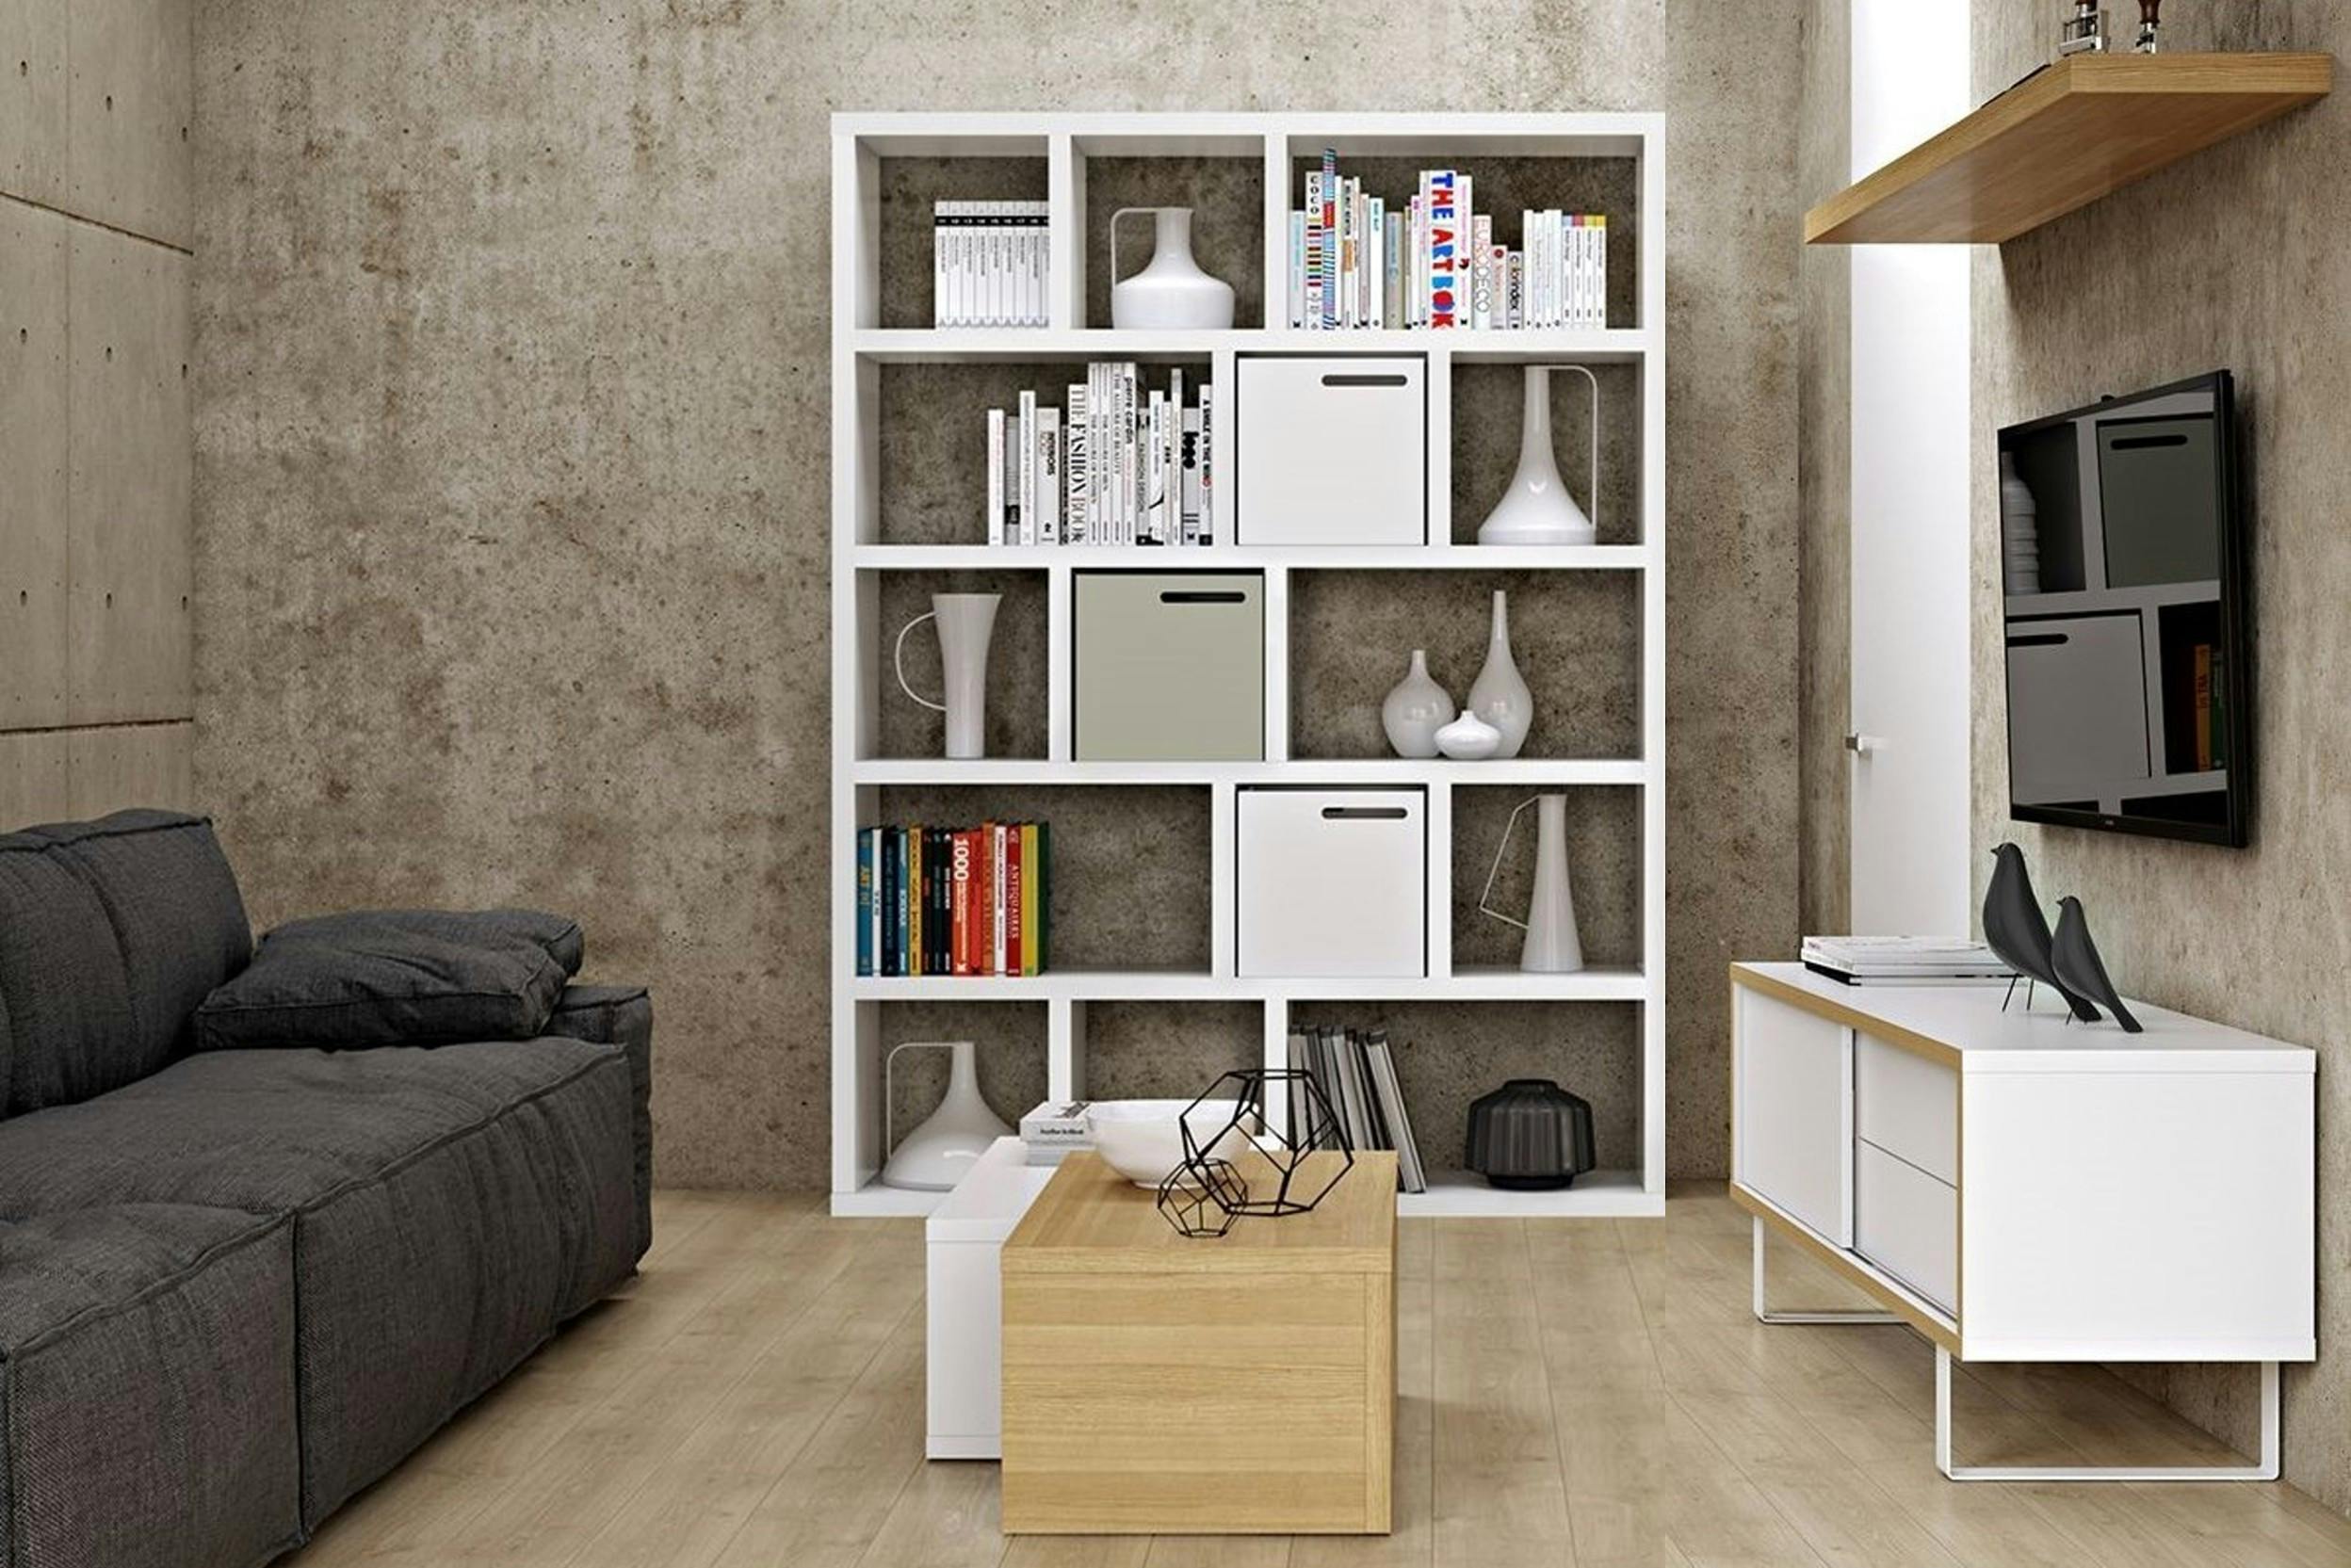 Salotto moderno a ispirazione scandi, con mobili di legno bianchi e beige, una TV fissata al muro e un divano moderno comfort